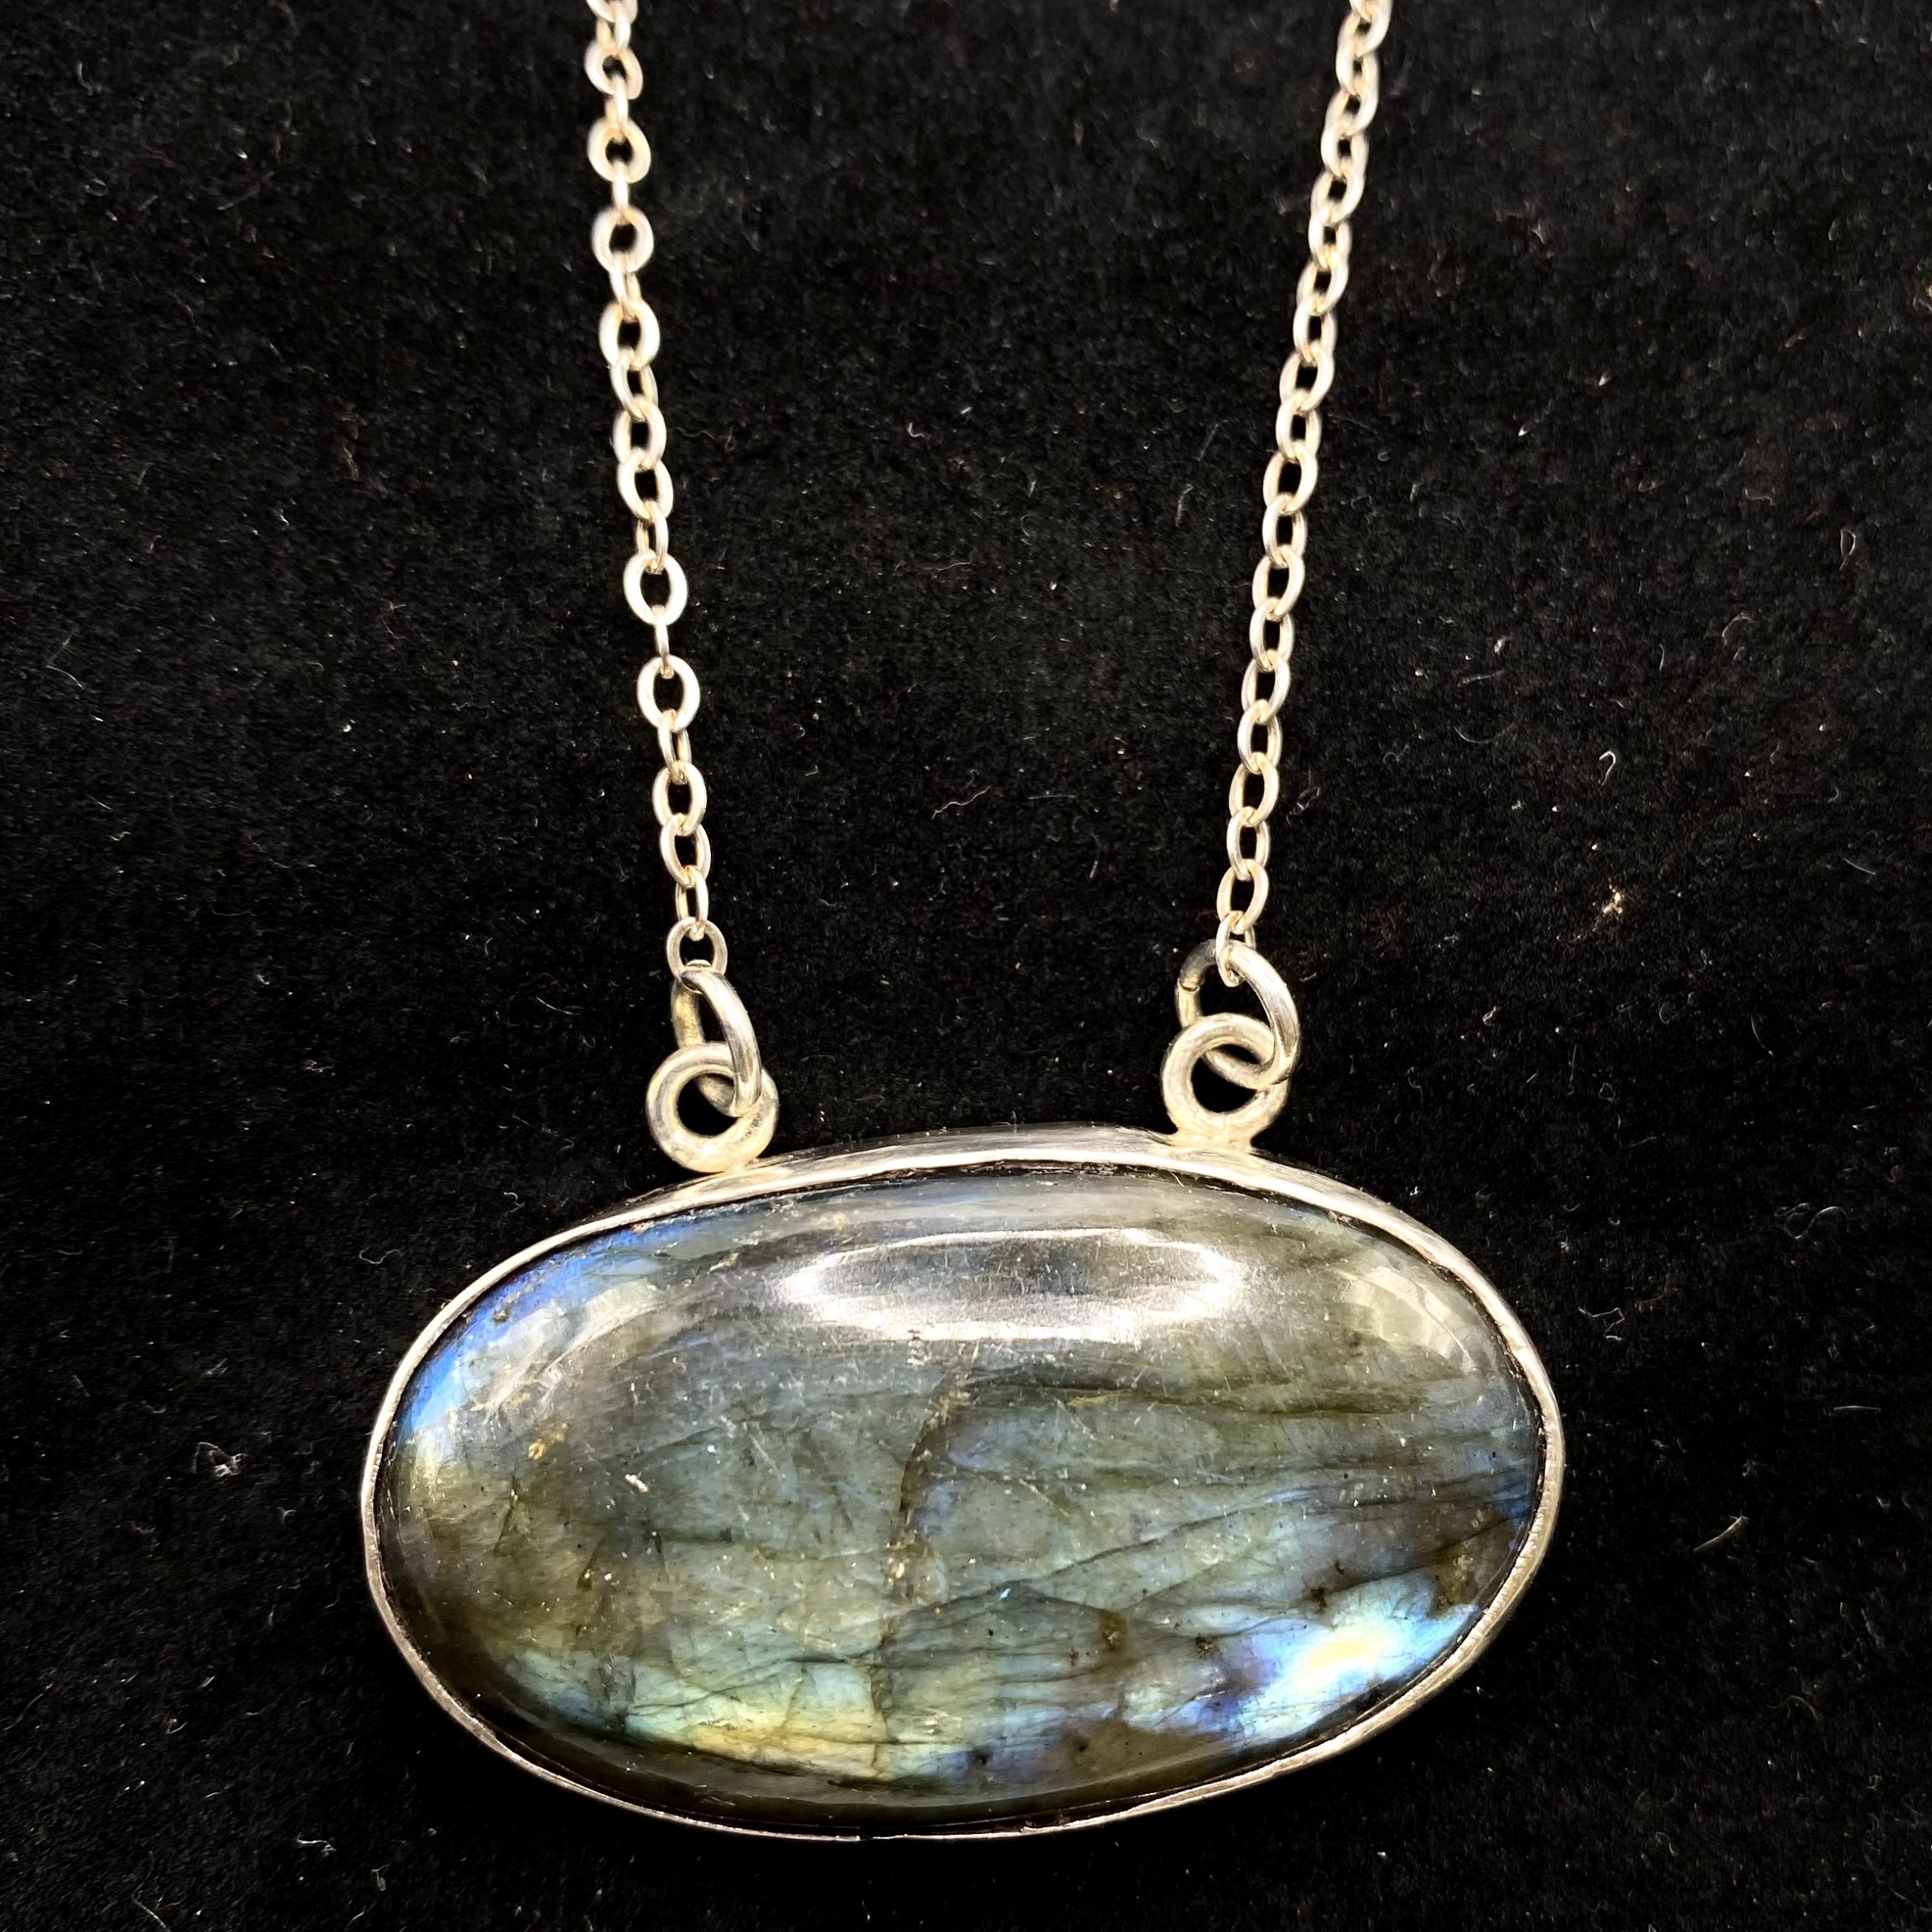 Labradorite stone and silver pendant